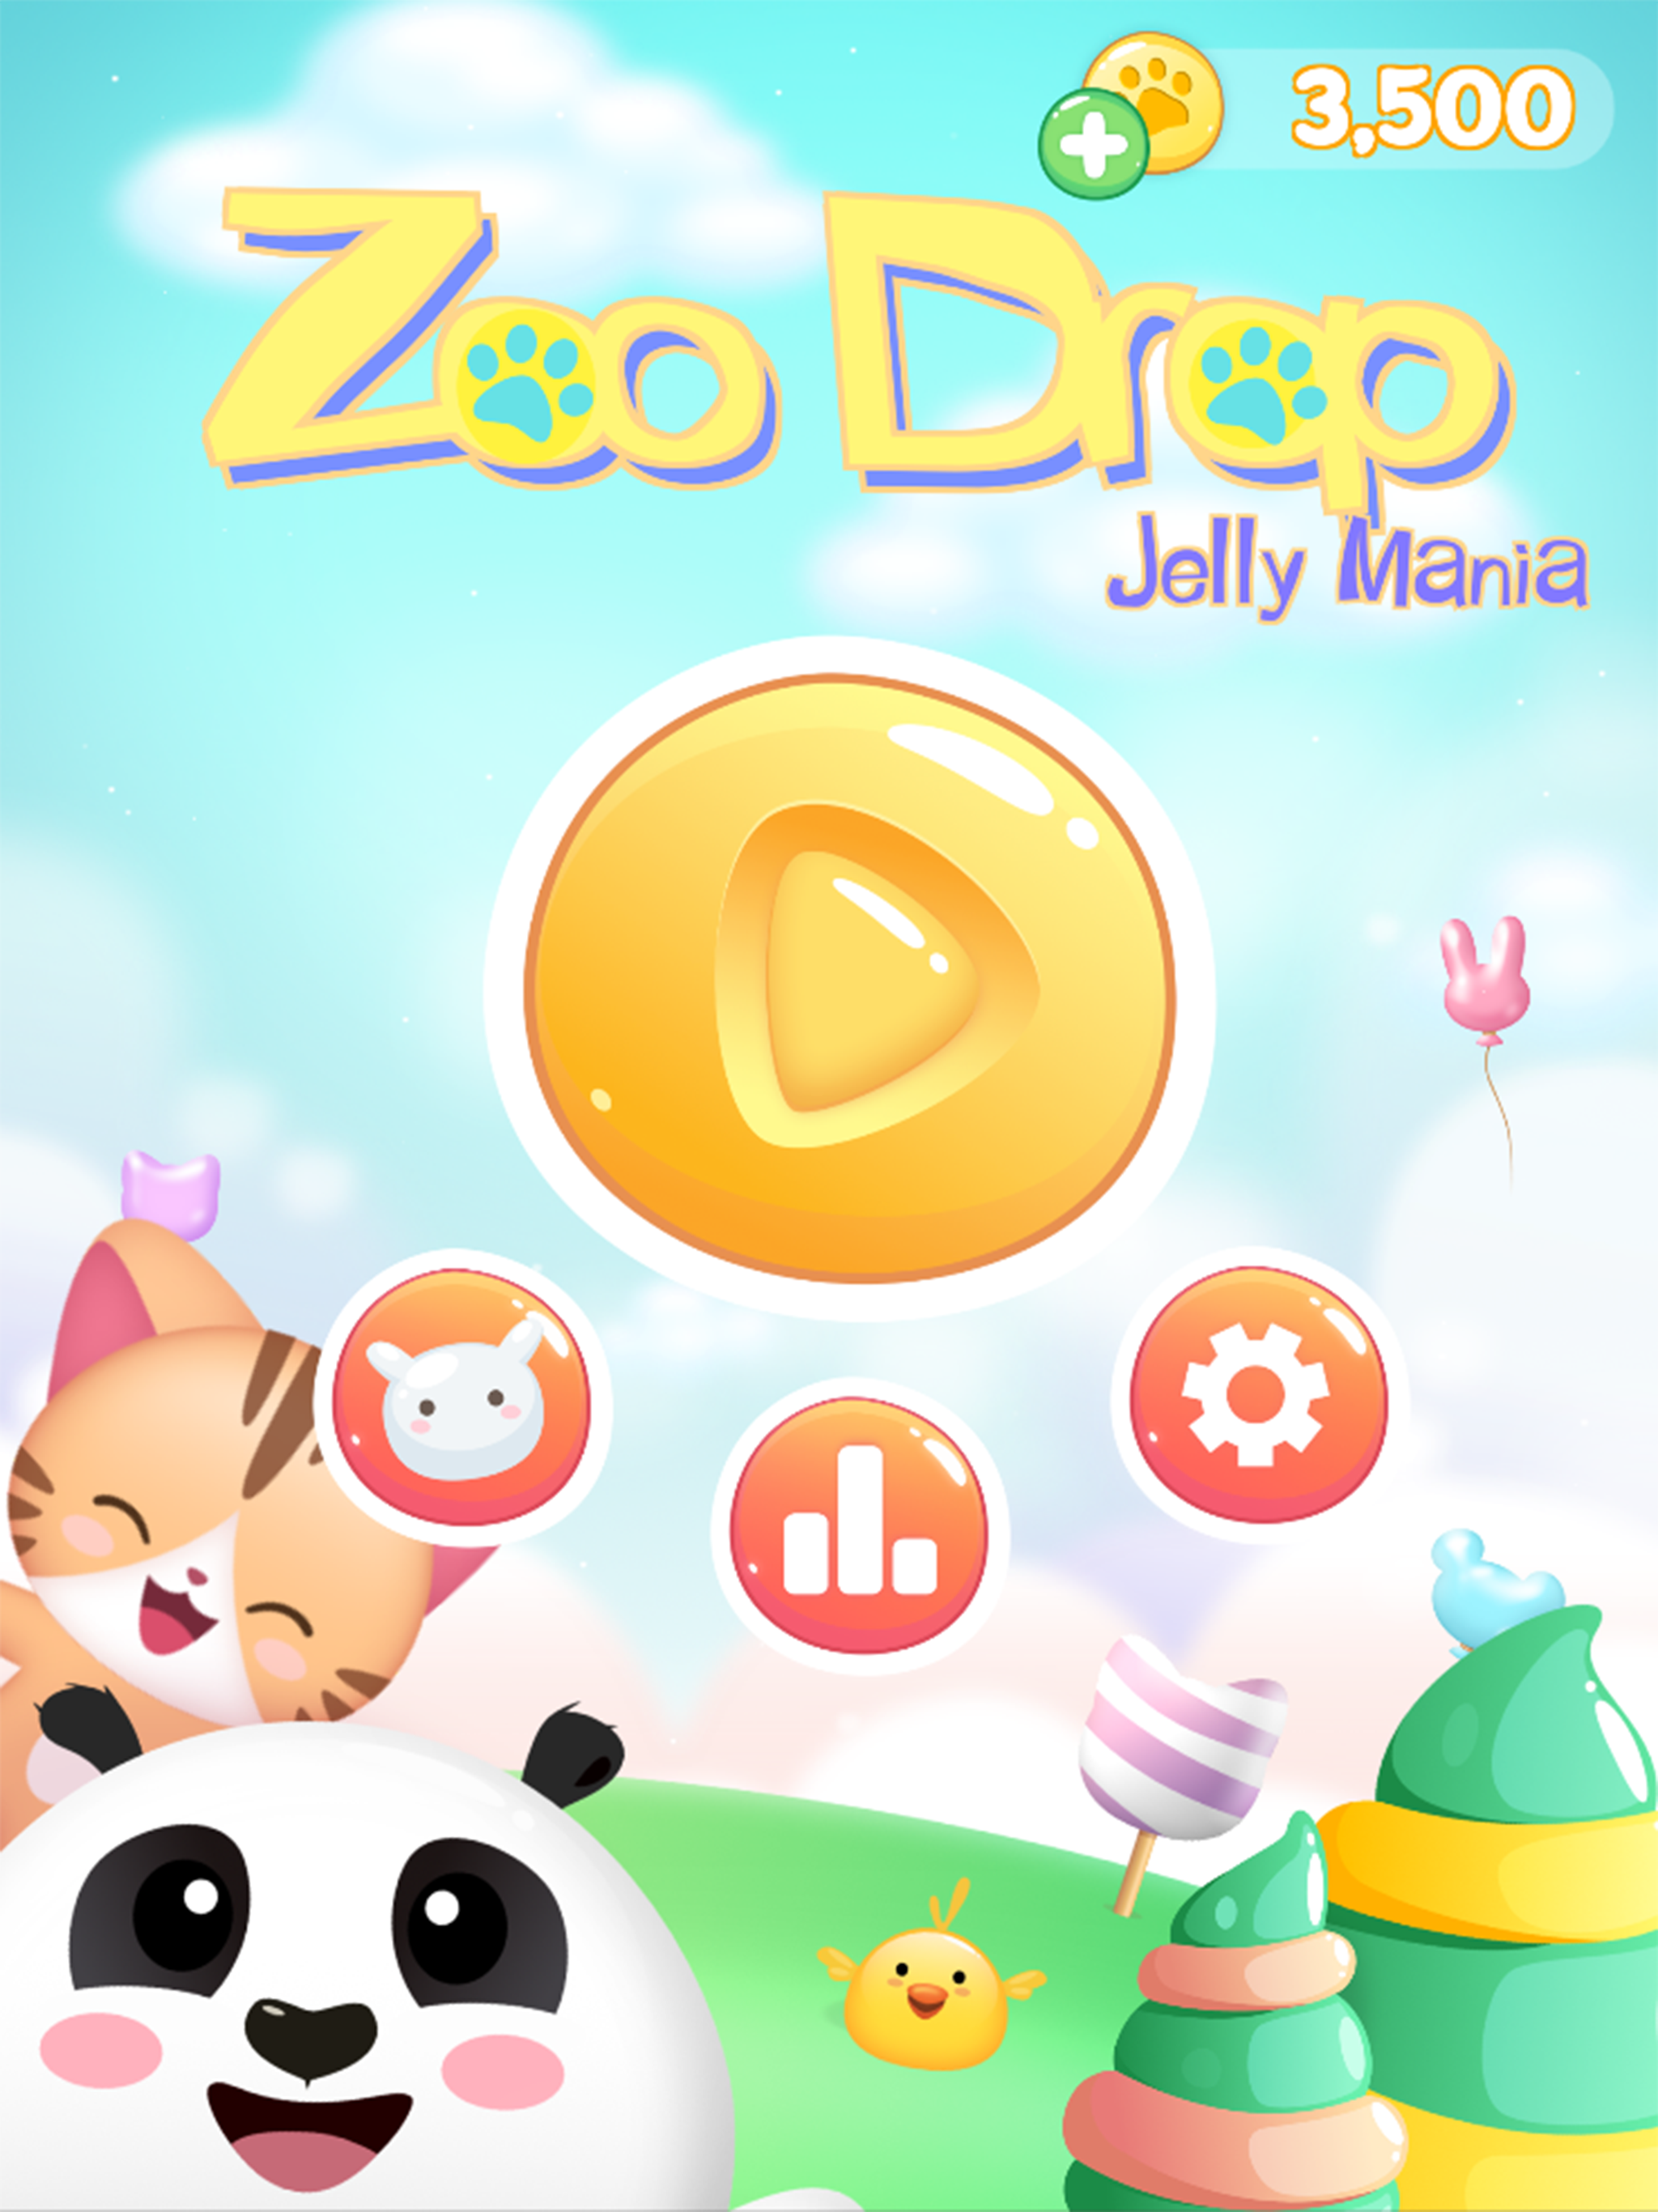 Zoo Drop : Jelly Mania